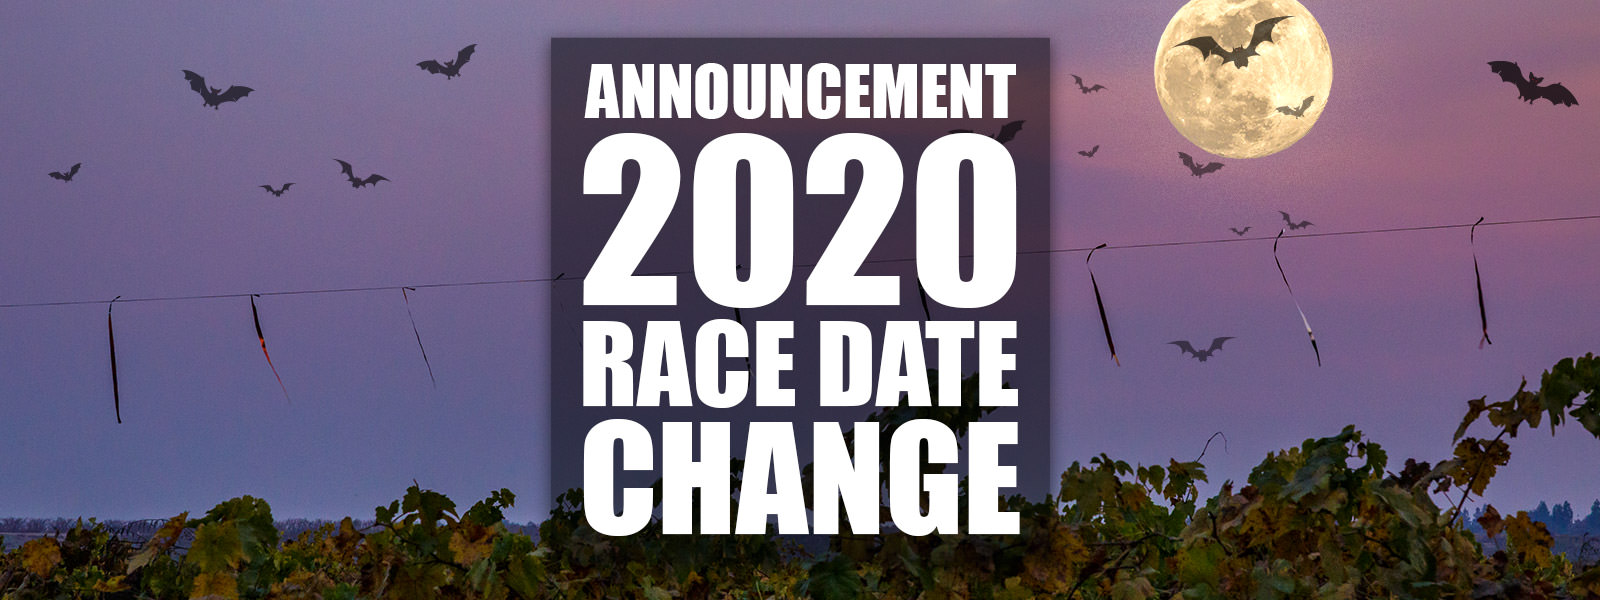 2020 RACE DATE CHANGE